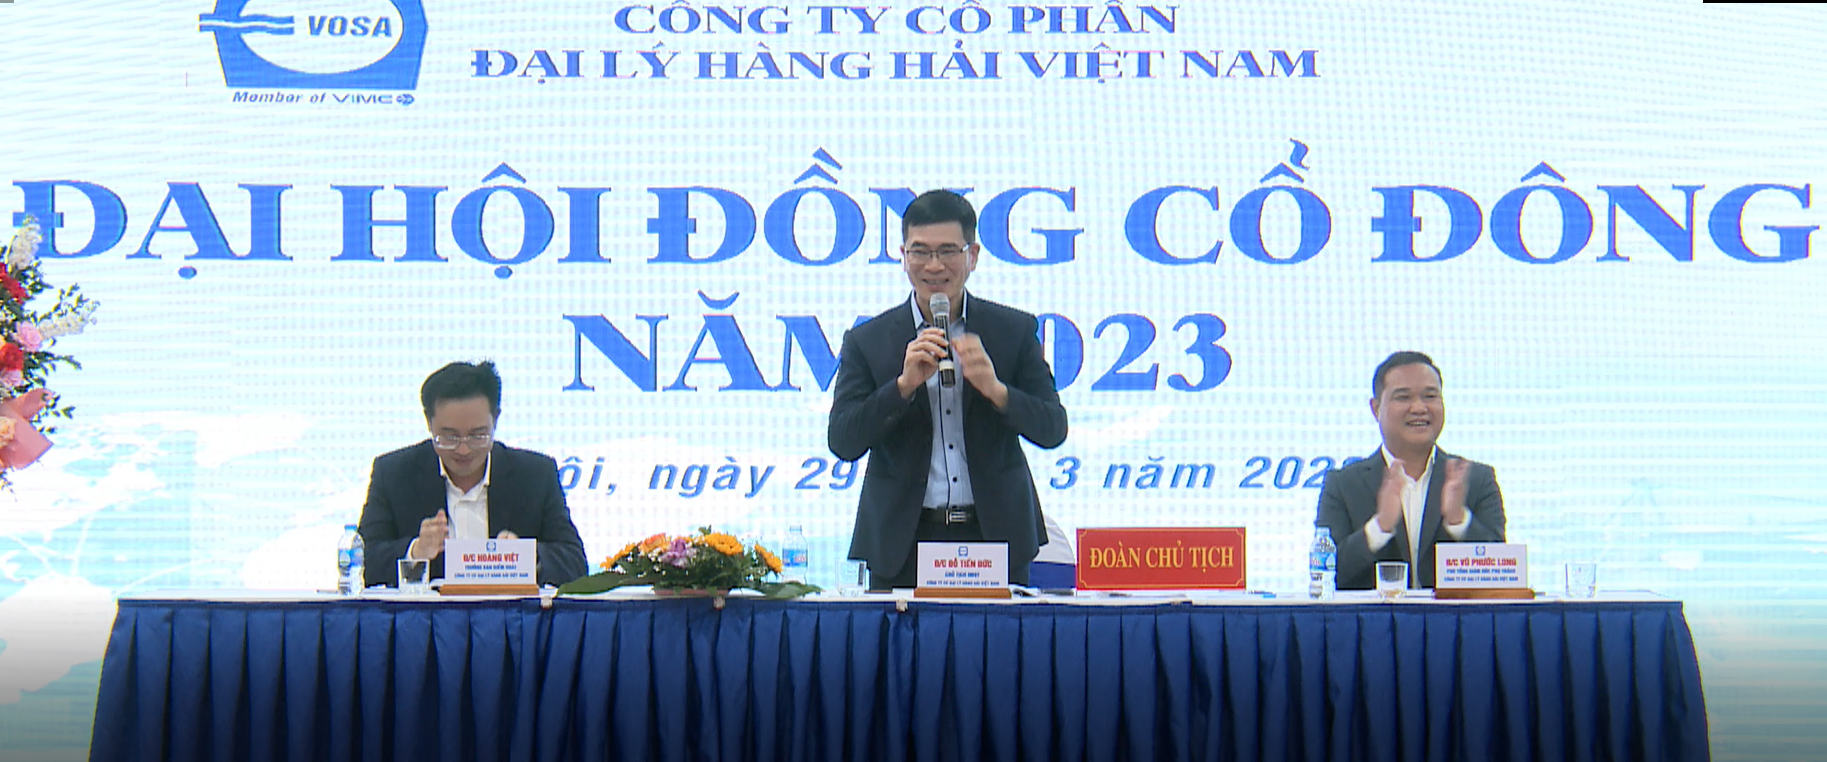 Đại hội cổ đông thường niên năm 2023 của CTCP Đại lý Hàng hải Việt Nam (VOSA) đã chính thức diễn ra - Ảnh 2.